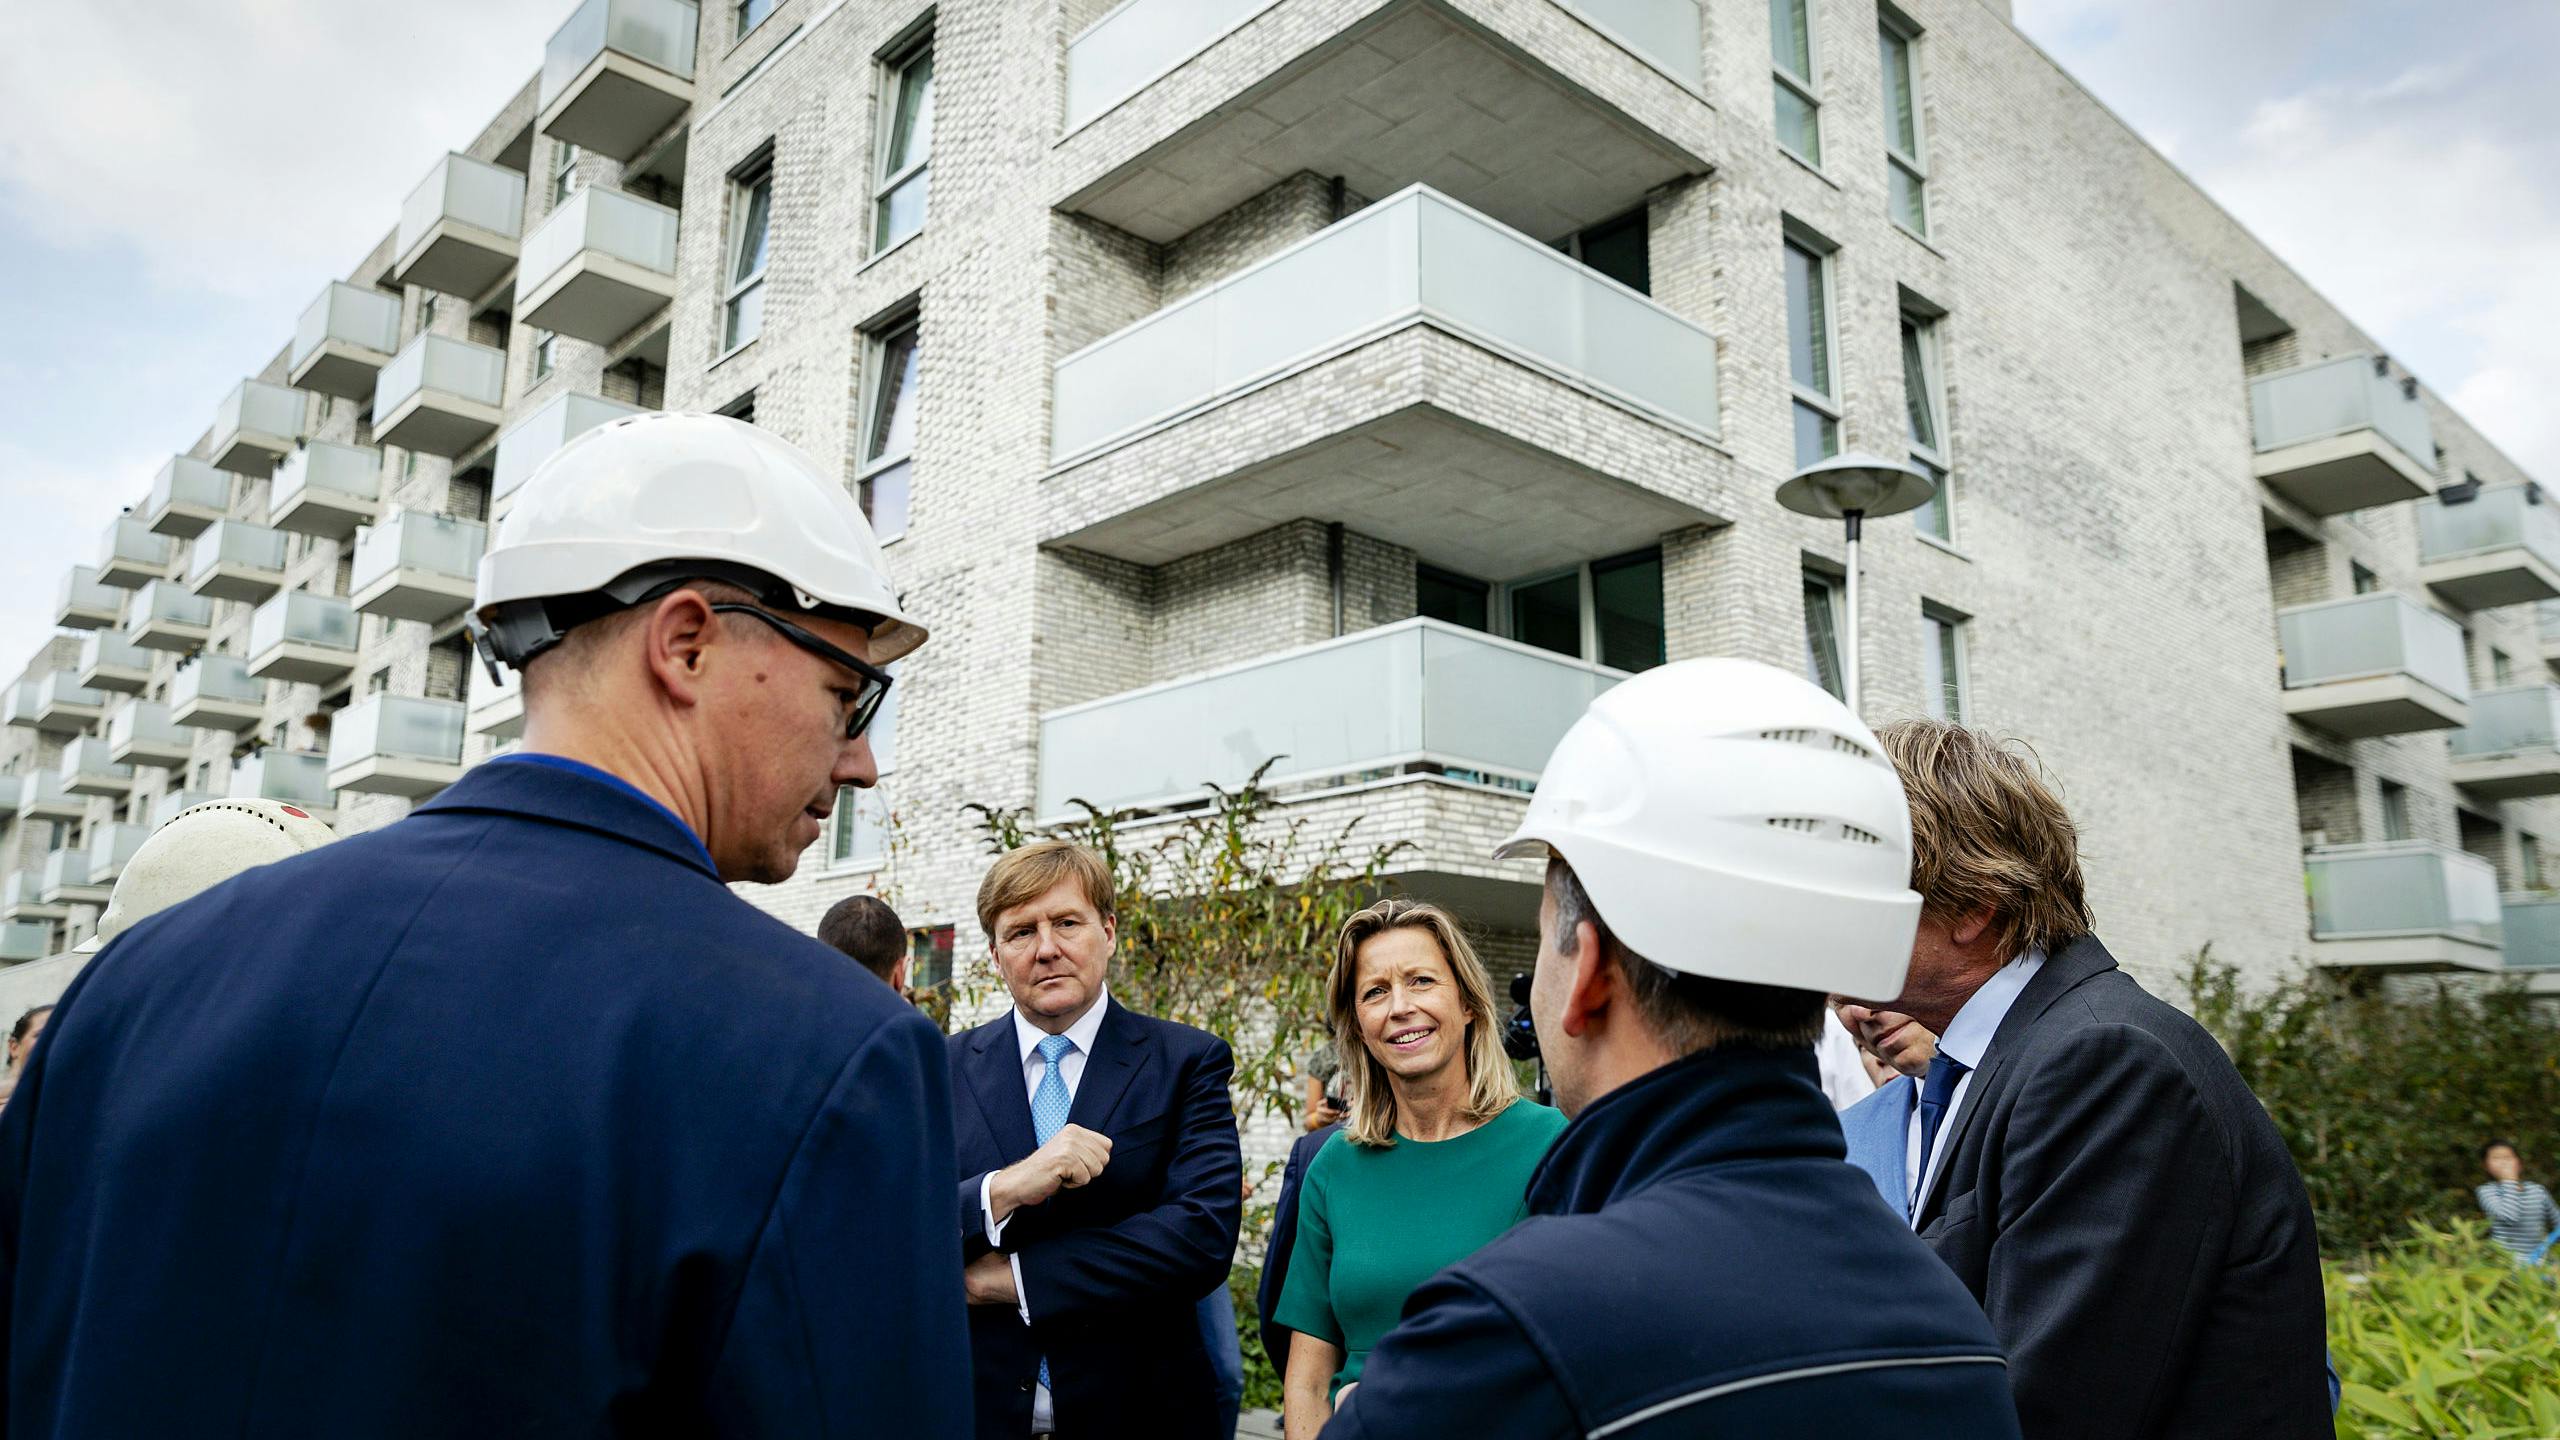 Koning Willem Alexander en minister Kajsa Ollongren (Binnenlandse Zaken en Koninkrijksrelaties) brachten in oktober 2018 een bezoek aan de wijk Veemarkt. De nadruk van dit bezoek lag op vernieuwingen in de woningmarkt en de energietransitie.